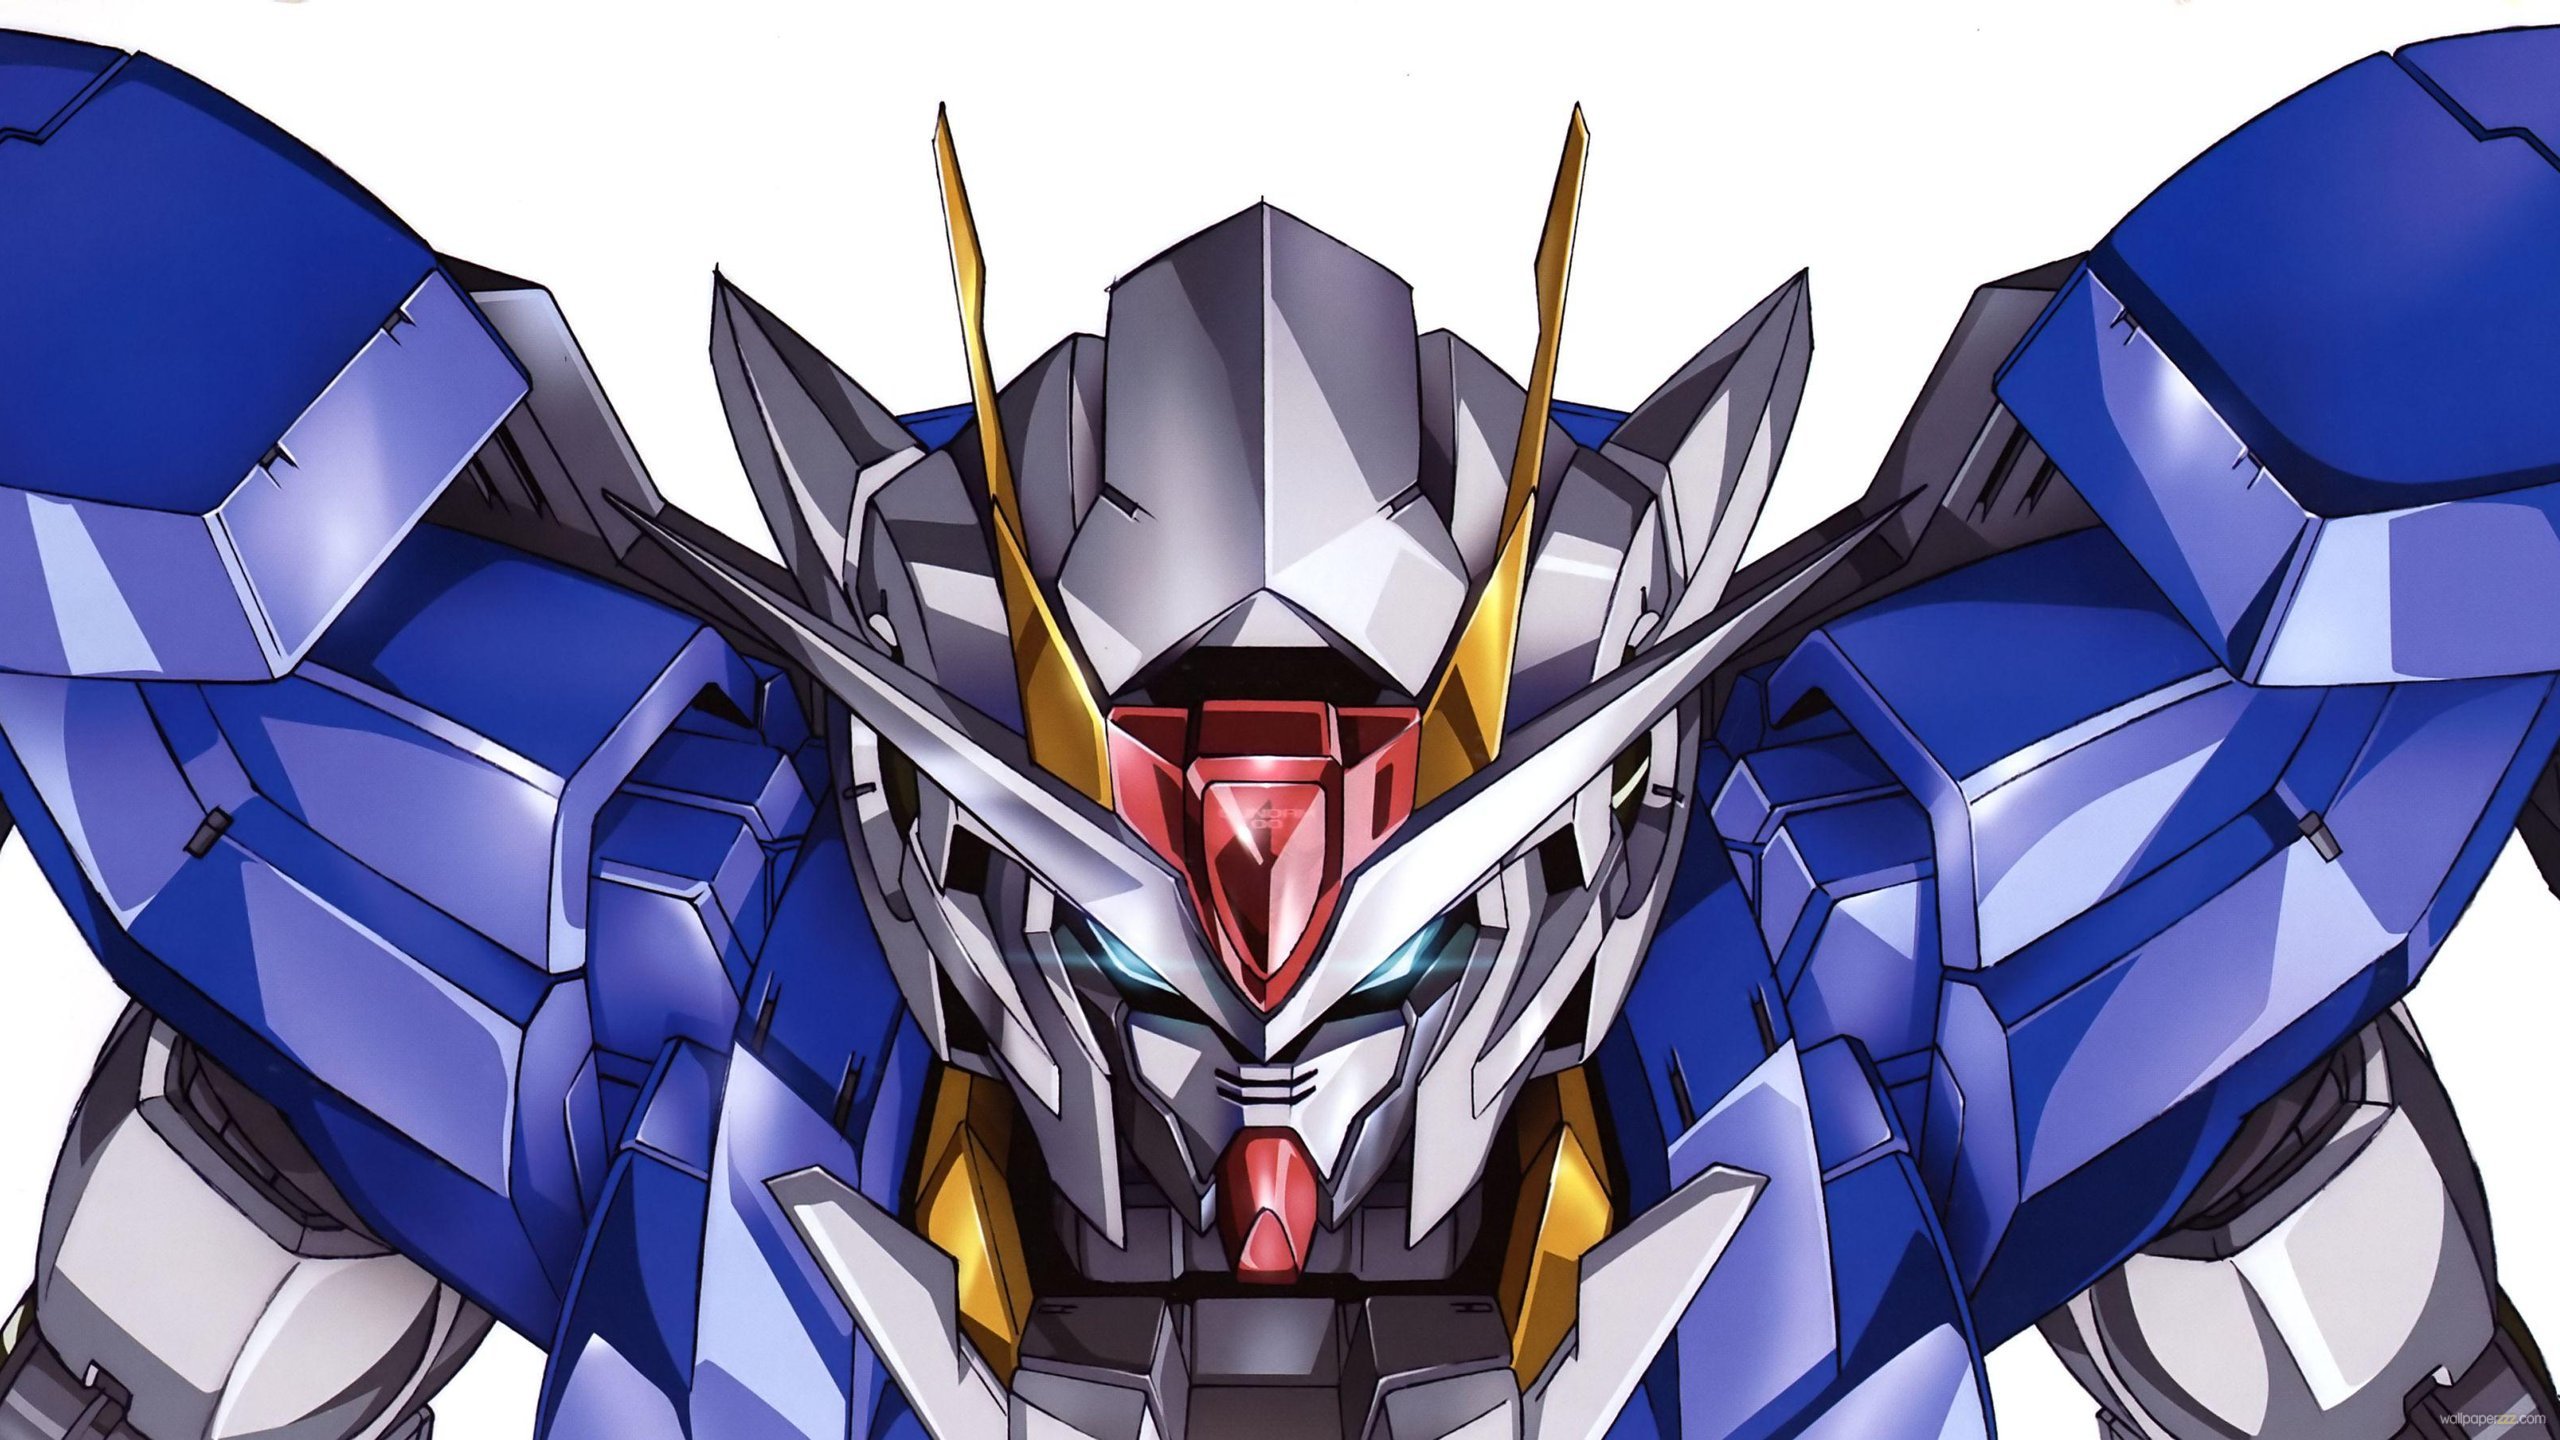 Gundam Poster Anime Wallpaper HD 981 3908 Wallpaper High Resolution